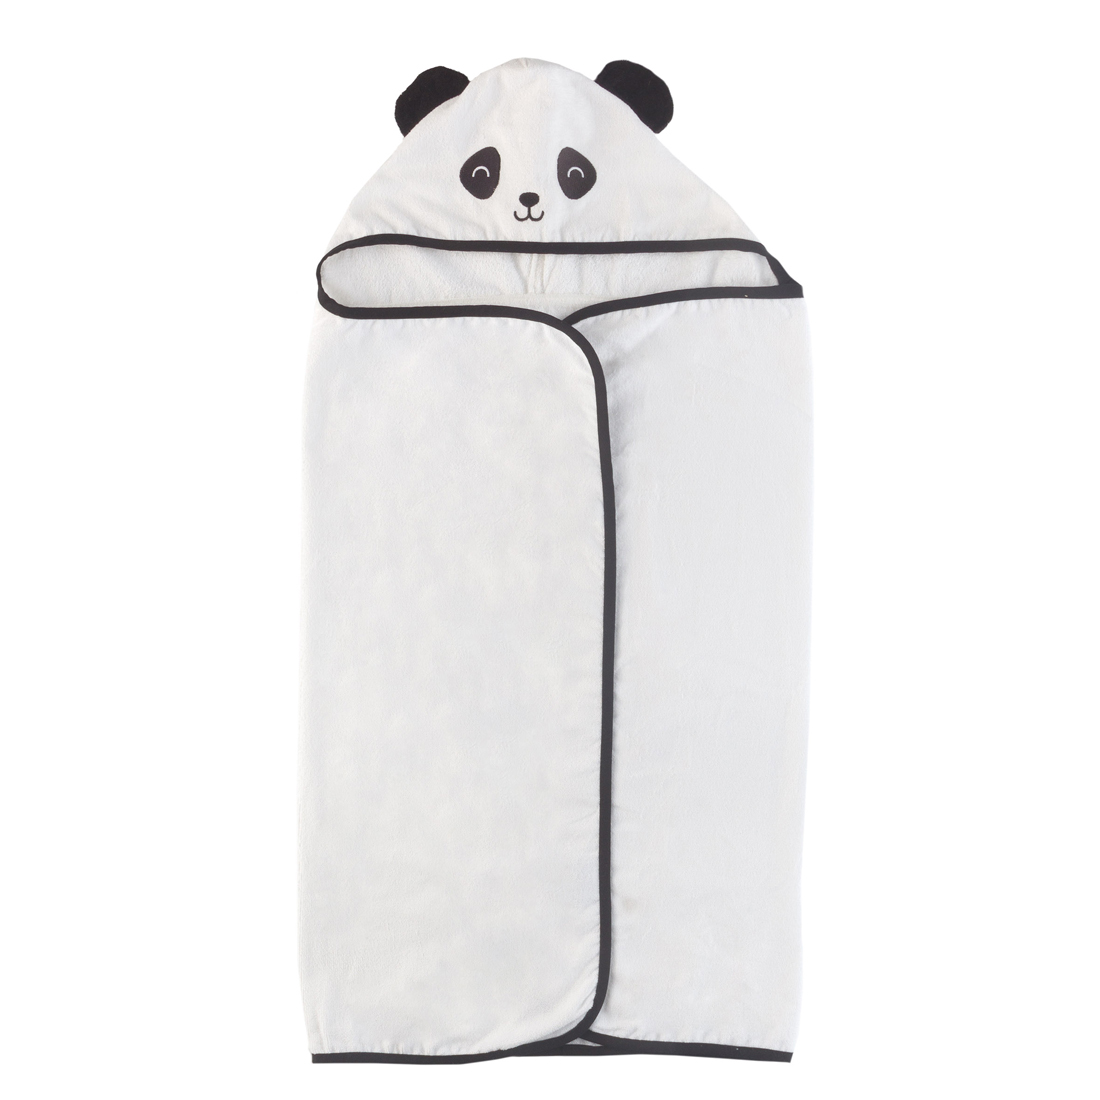 Toalha de Banho Infantil c/ Capuz Bordado Panda Branco Avulsa - 100% Algodão 300g/m²